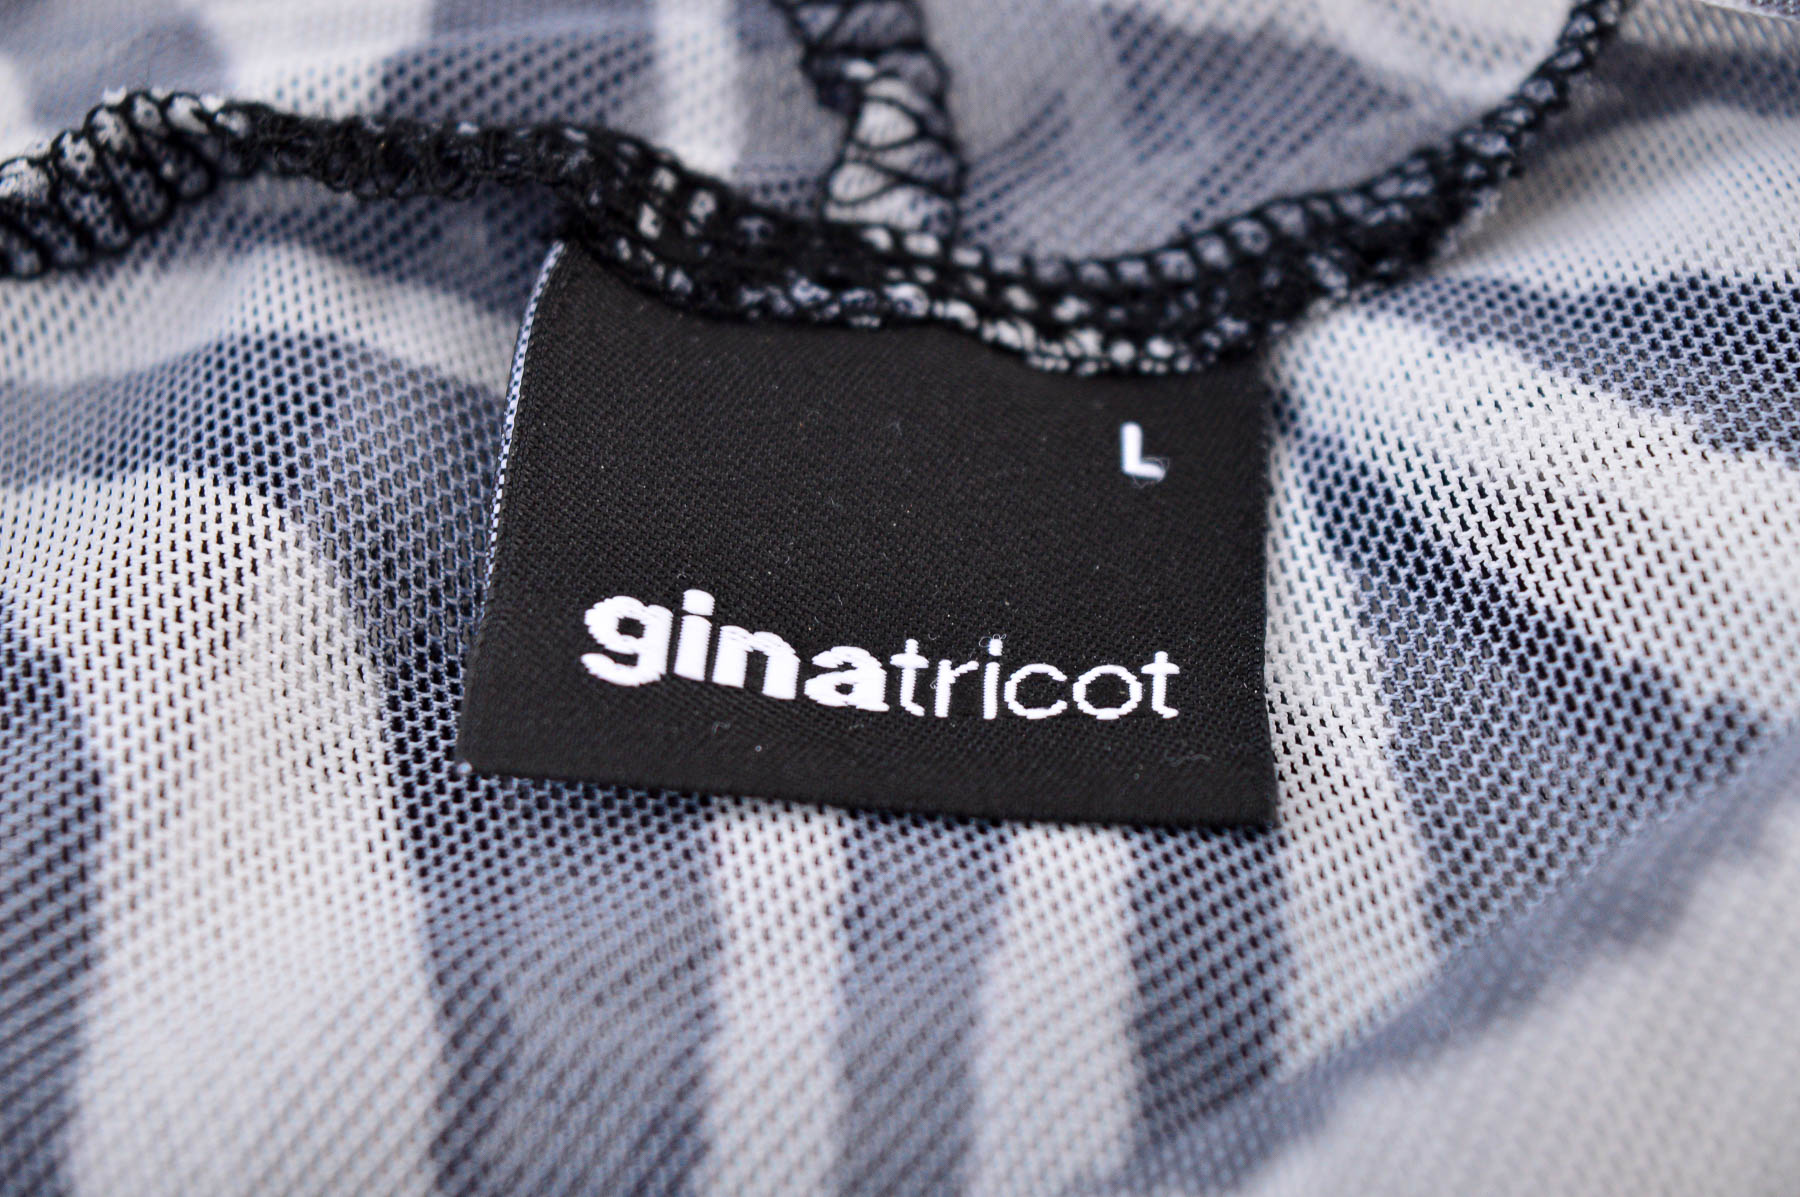 Γυναικεία μπλούζα - ginatricot - 2